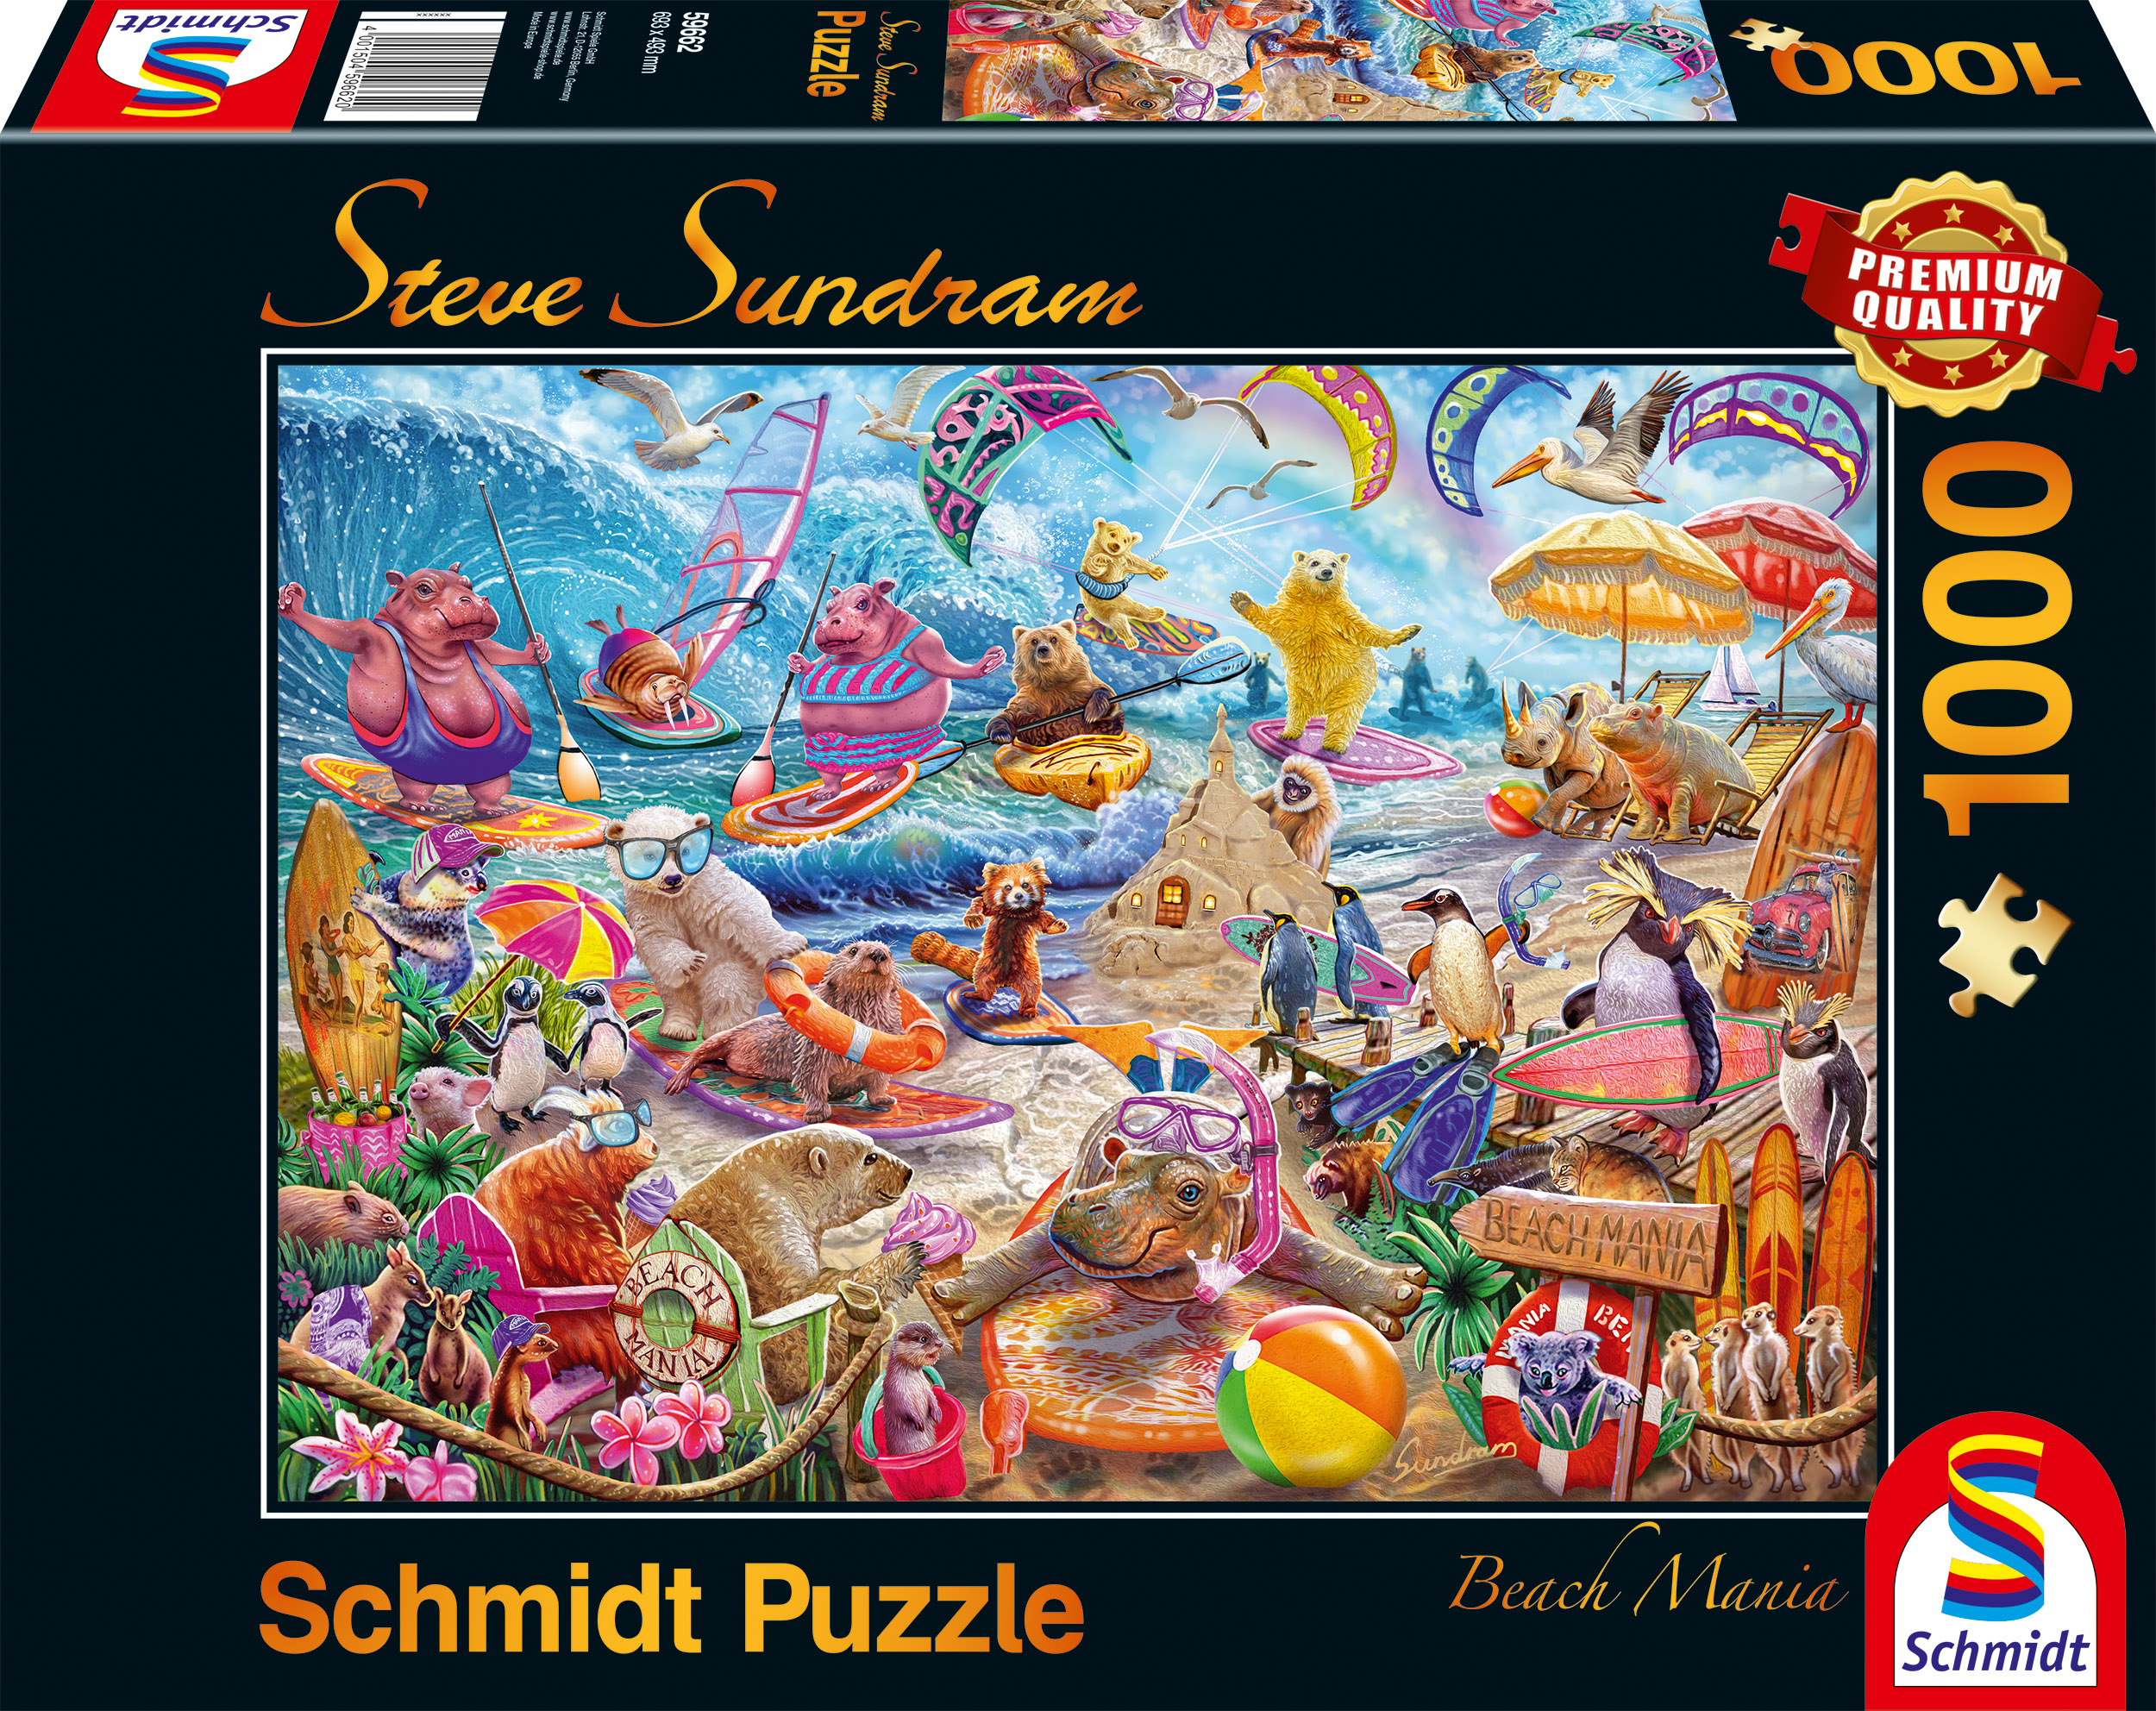 Beach Mania ist ein von Steve Sundram gezeichnetes Puzzle